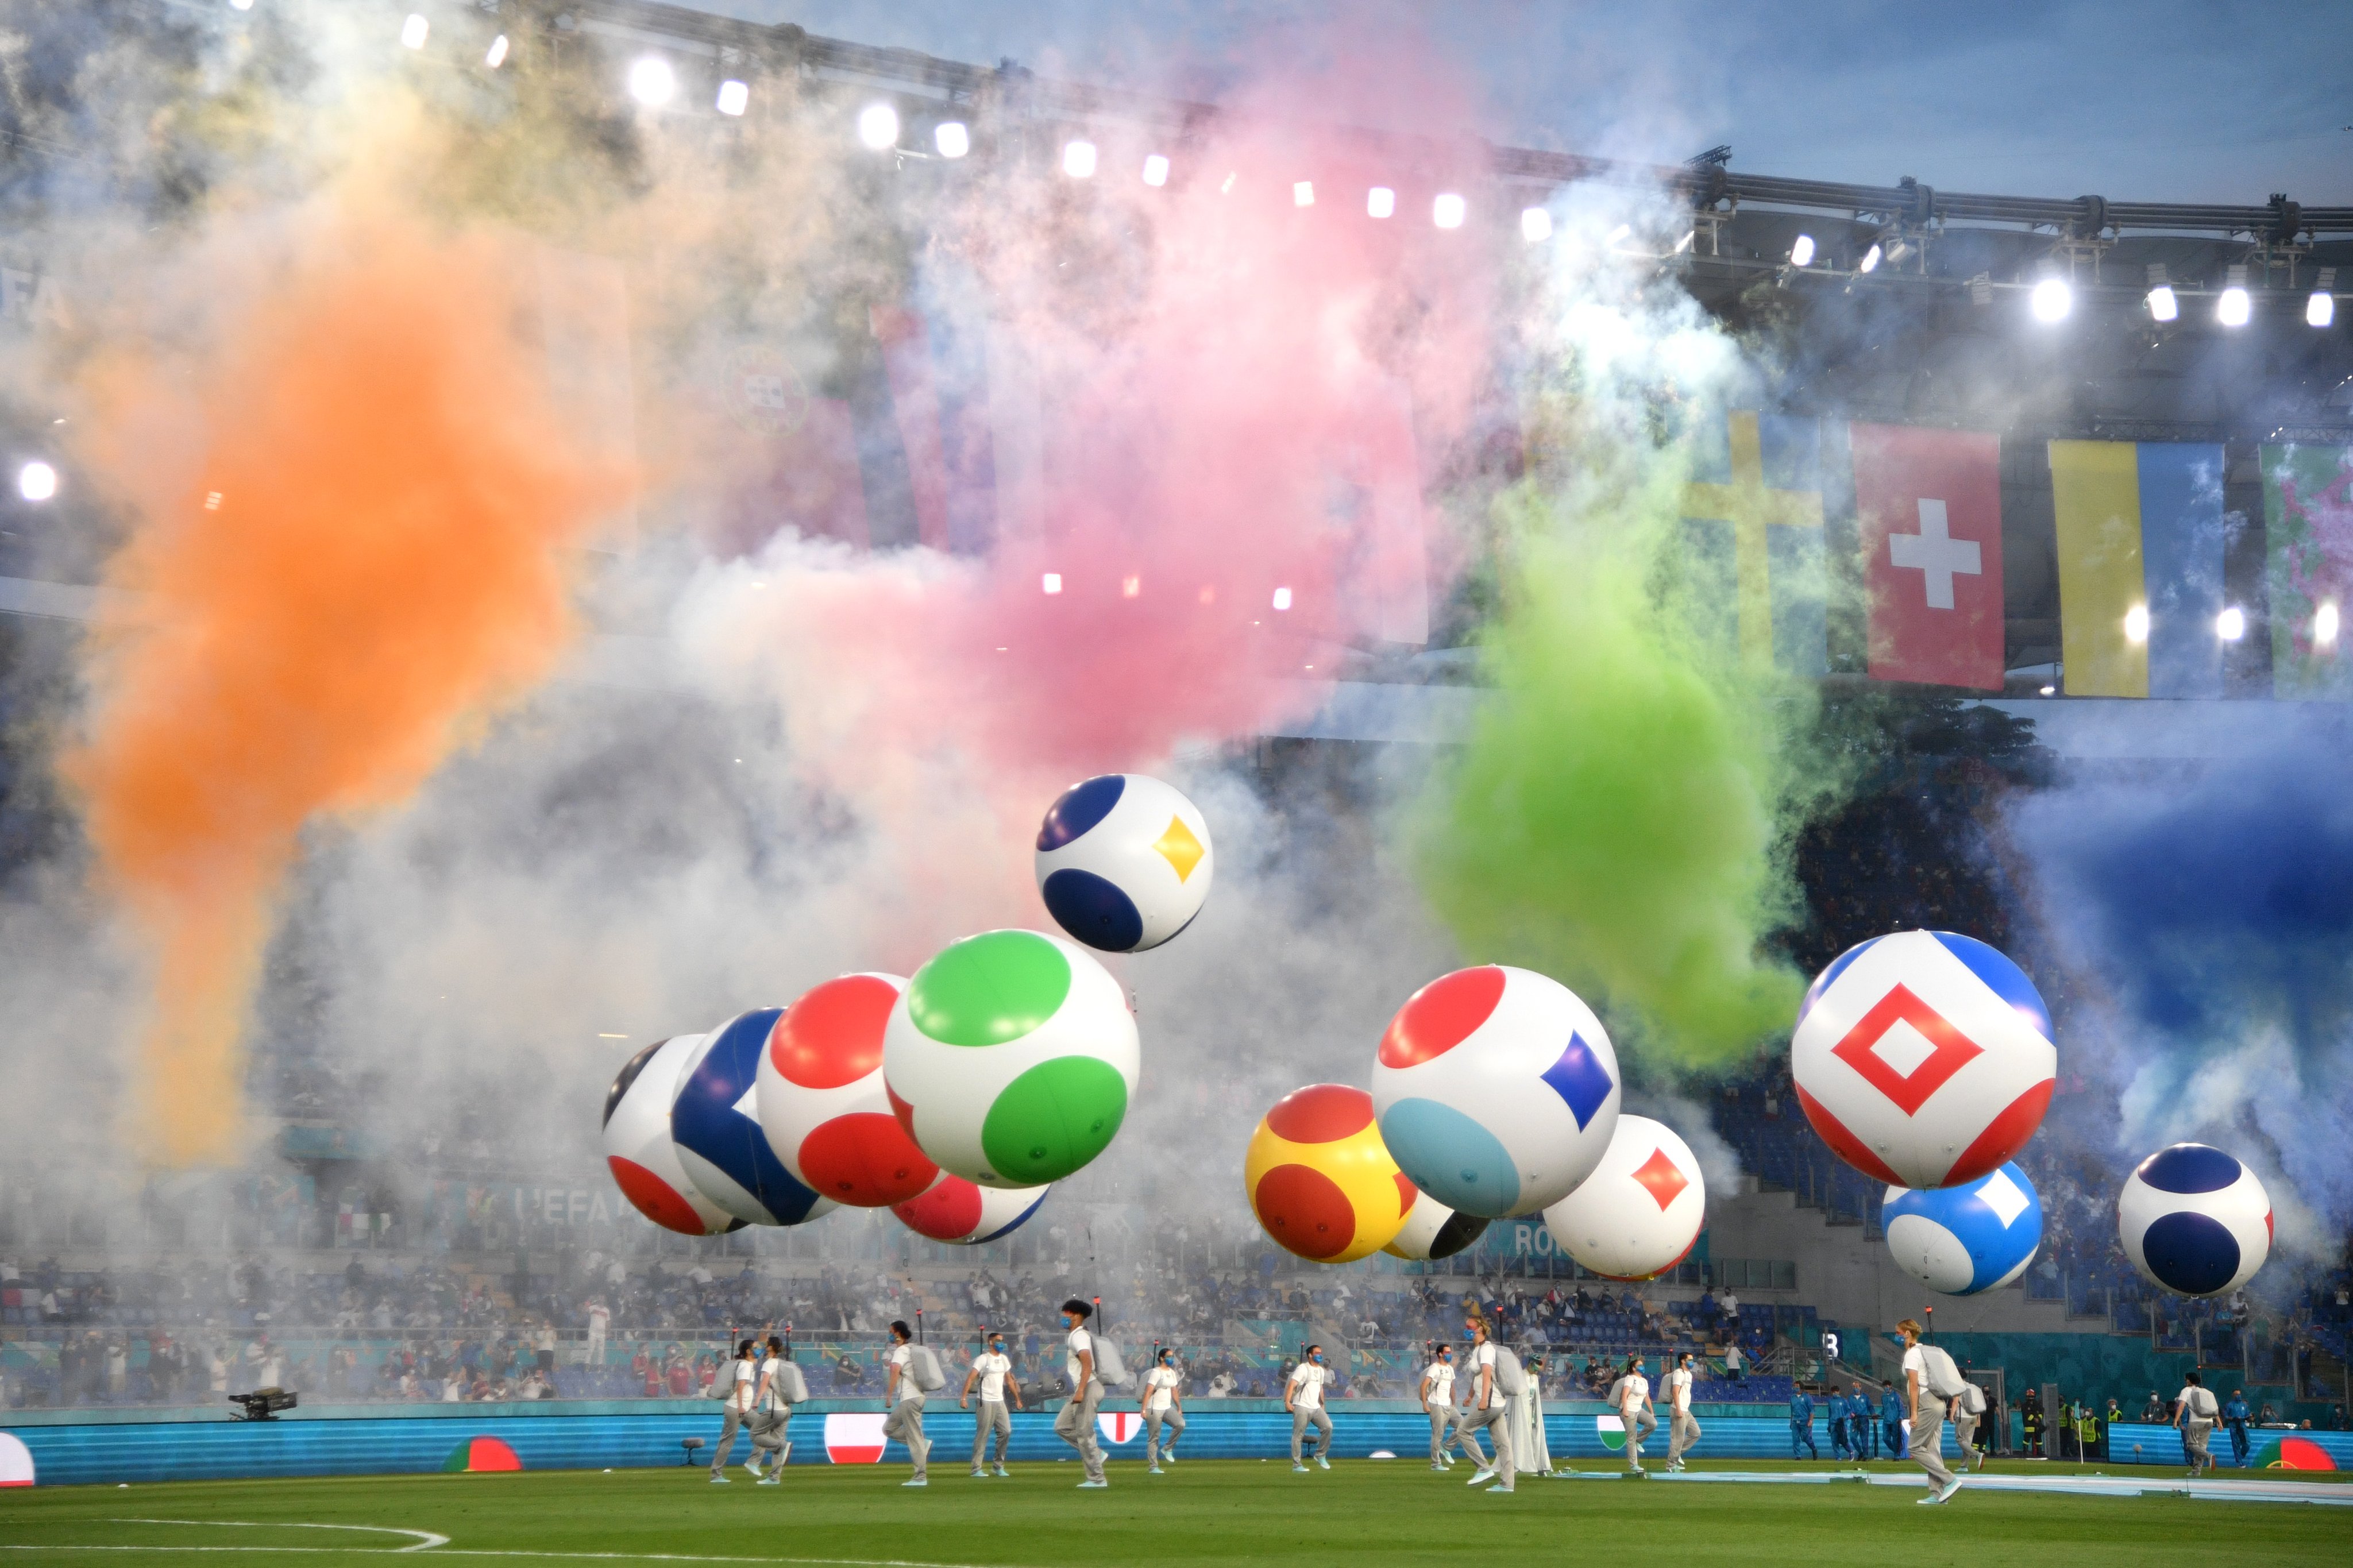 Todo el colorido de la fiesta de inauguración en el Olímpico de Roma. Luego, la Azurra le dio una lección de fútbol a Turquía.